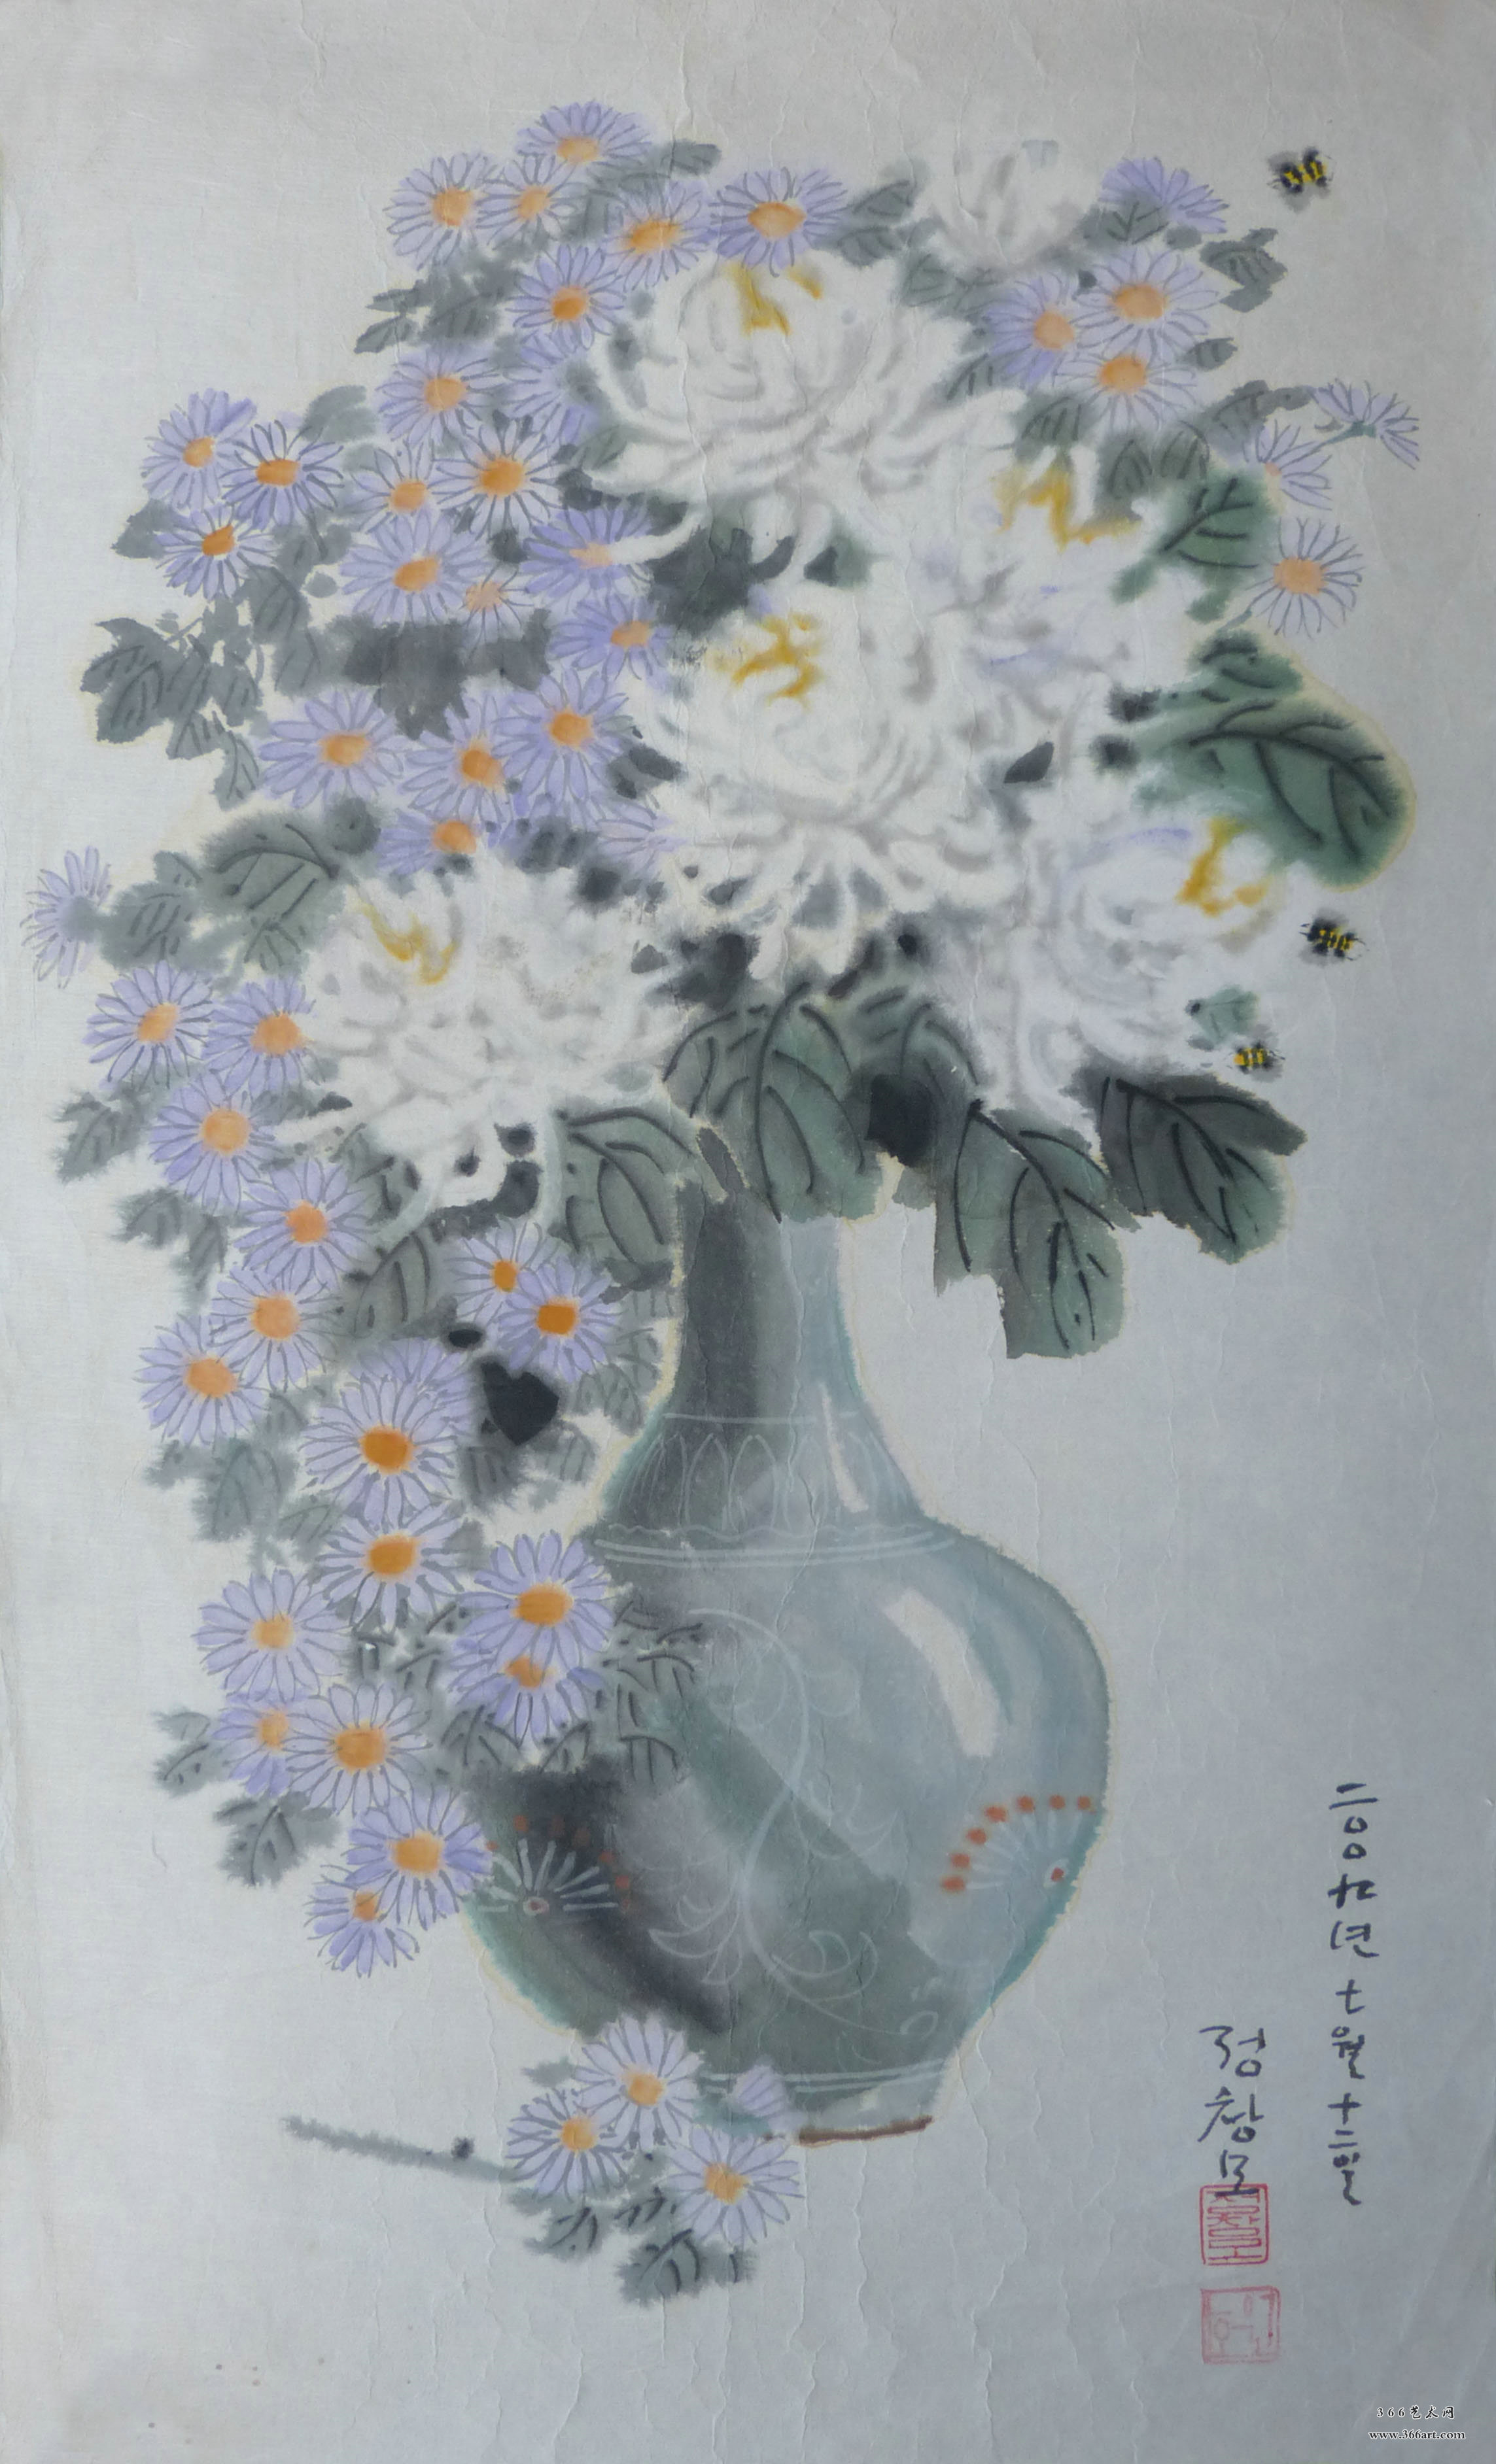 【朝鲜画】郑昶谟 紫菊 2009年 36 x 60cm